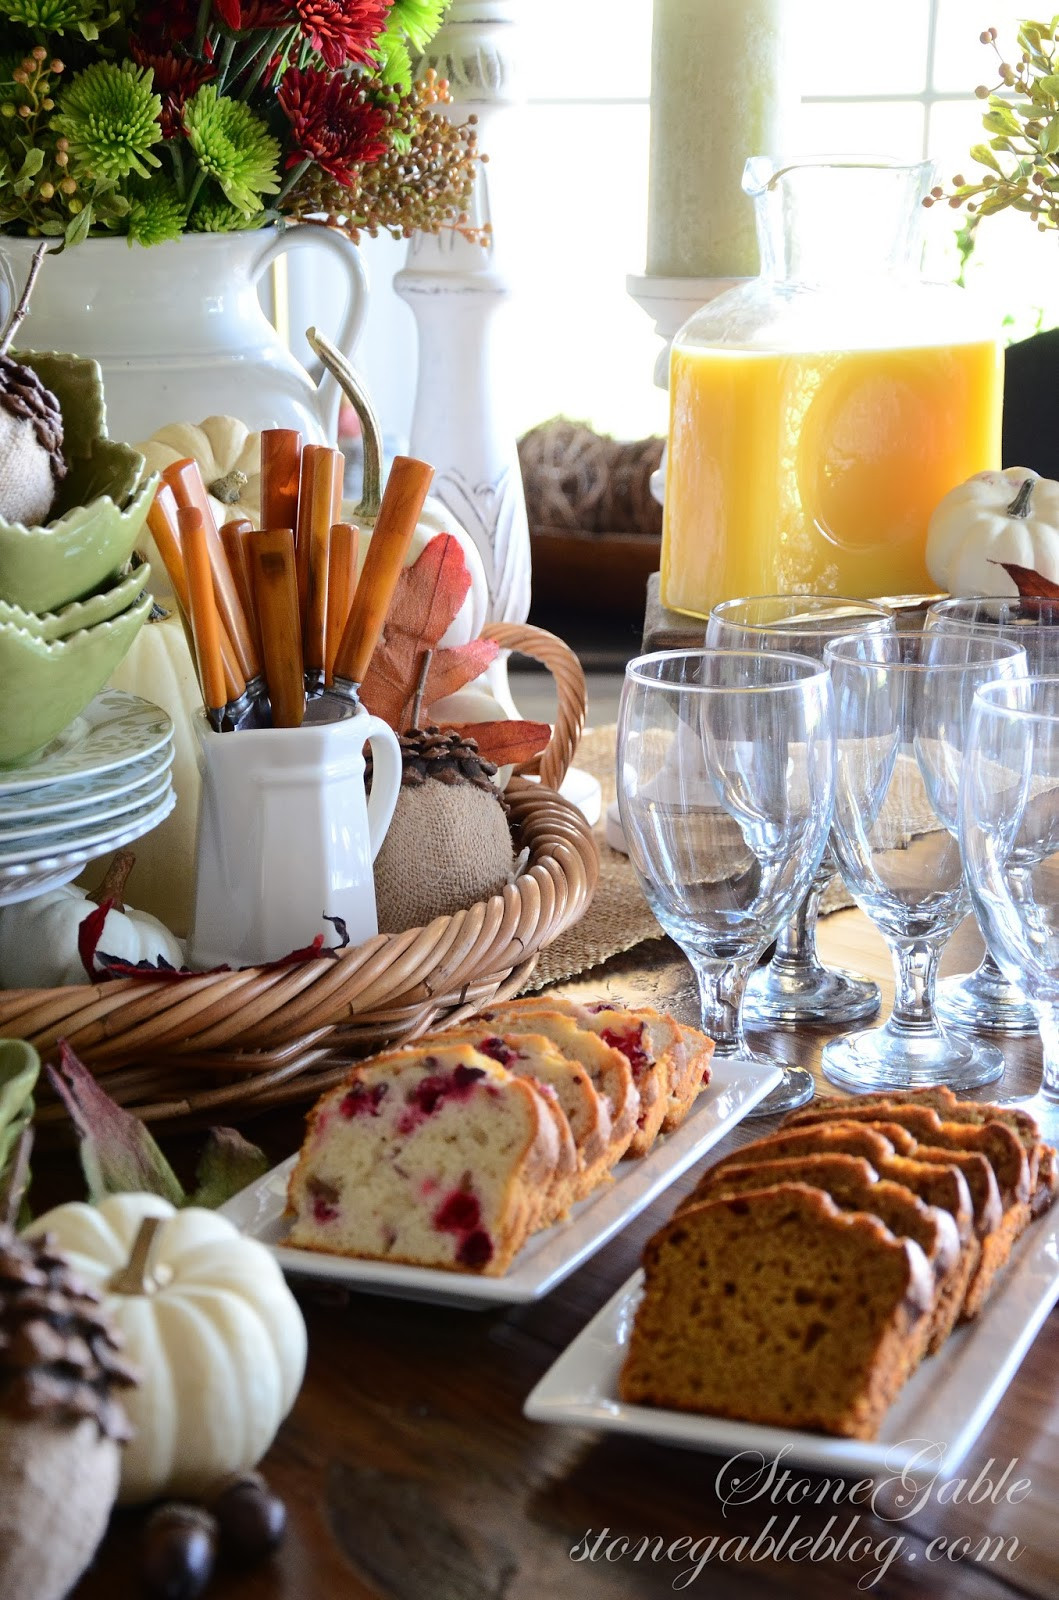 Thanksgiving Breakfast Menu Ideas
 THANKSGIVING CONTINENTAL BREAKFAST VIGNETTE Interior